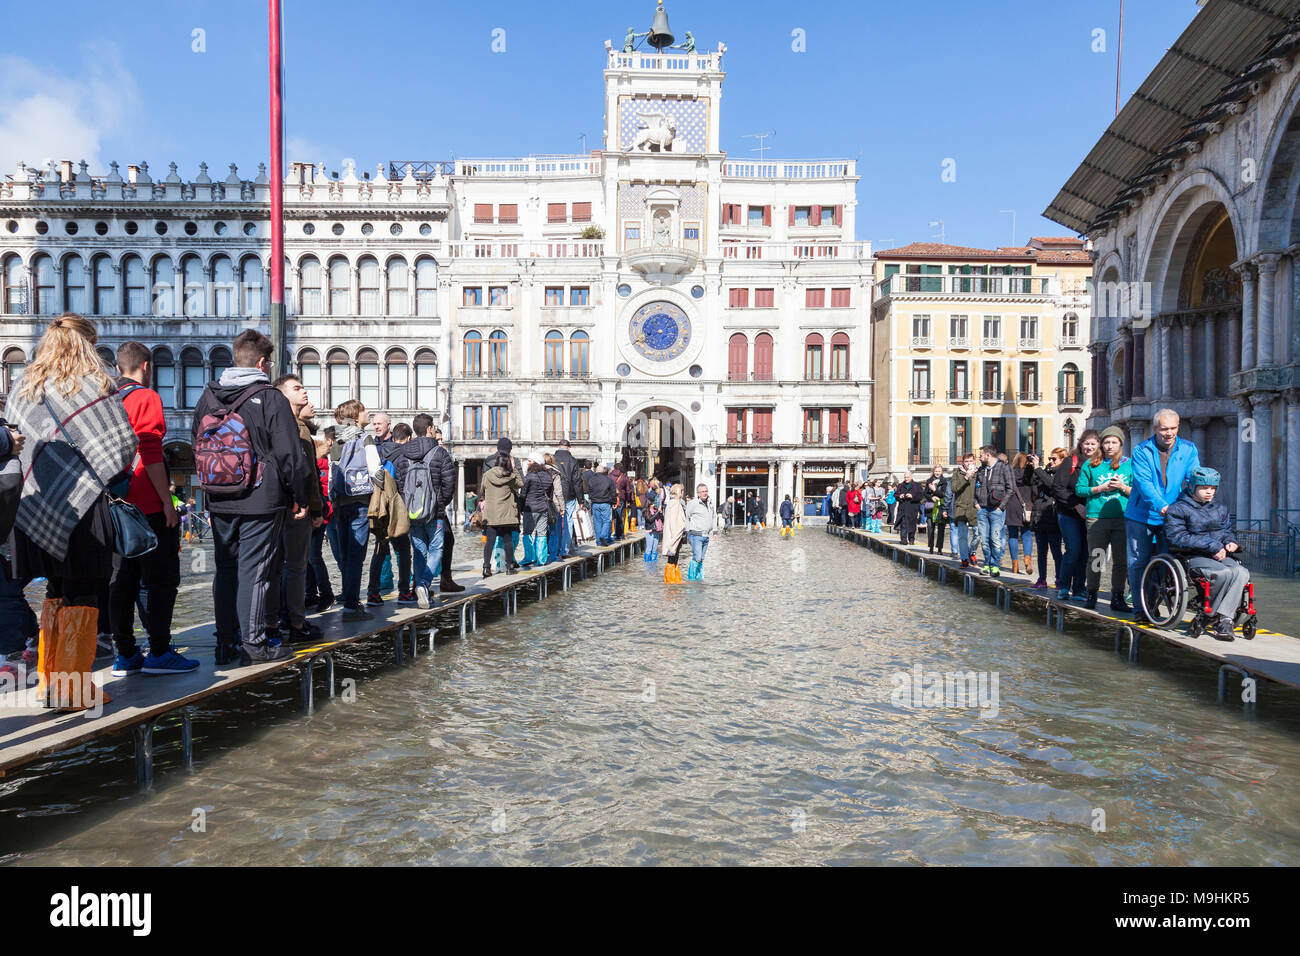 La gente che camminava sul passarelles in Piazza San Marco (Piazza San Marco) durante l'Acqua Alta inondazioni tra cui un ragazzo su una sedia a rotelle, Venezia, Veneto, Foto Stock